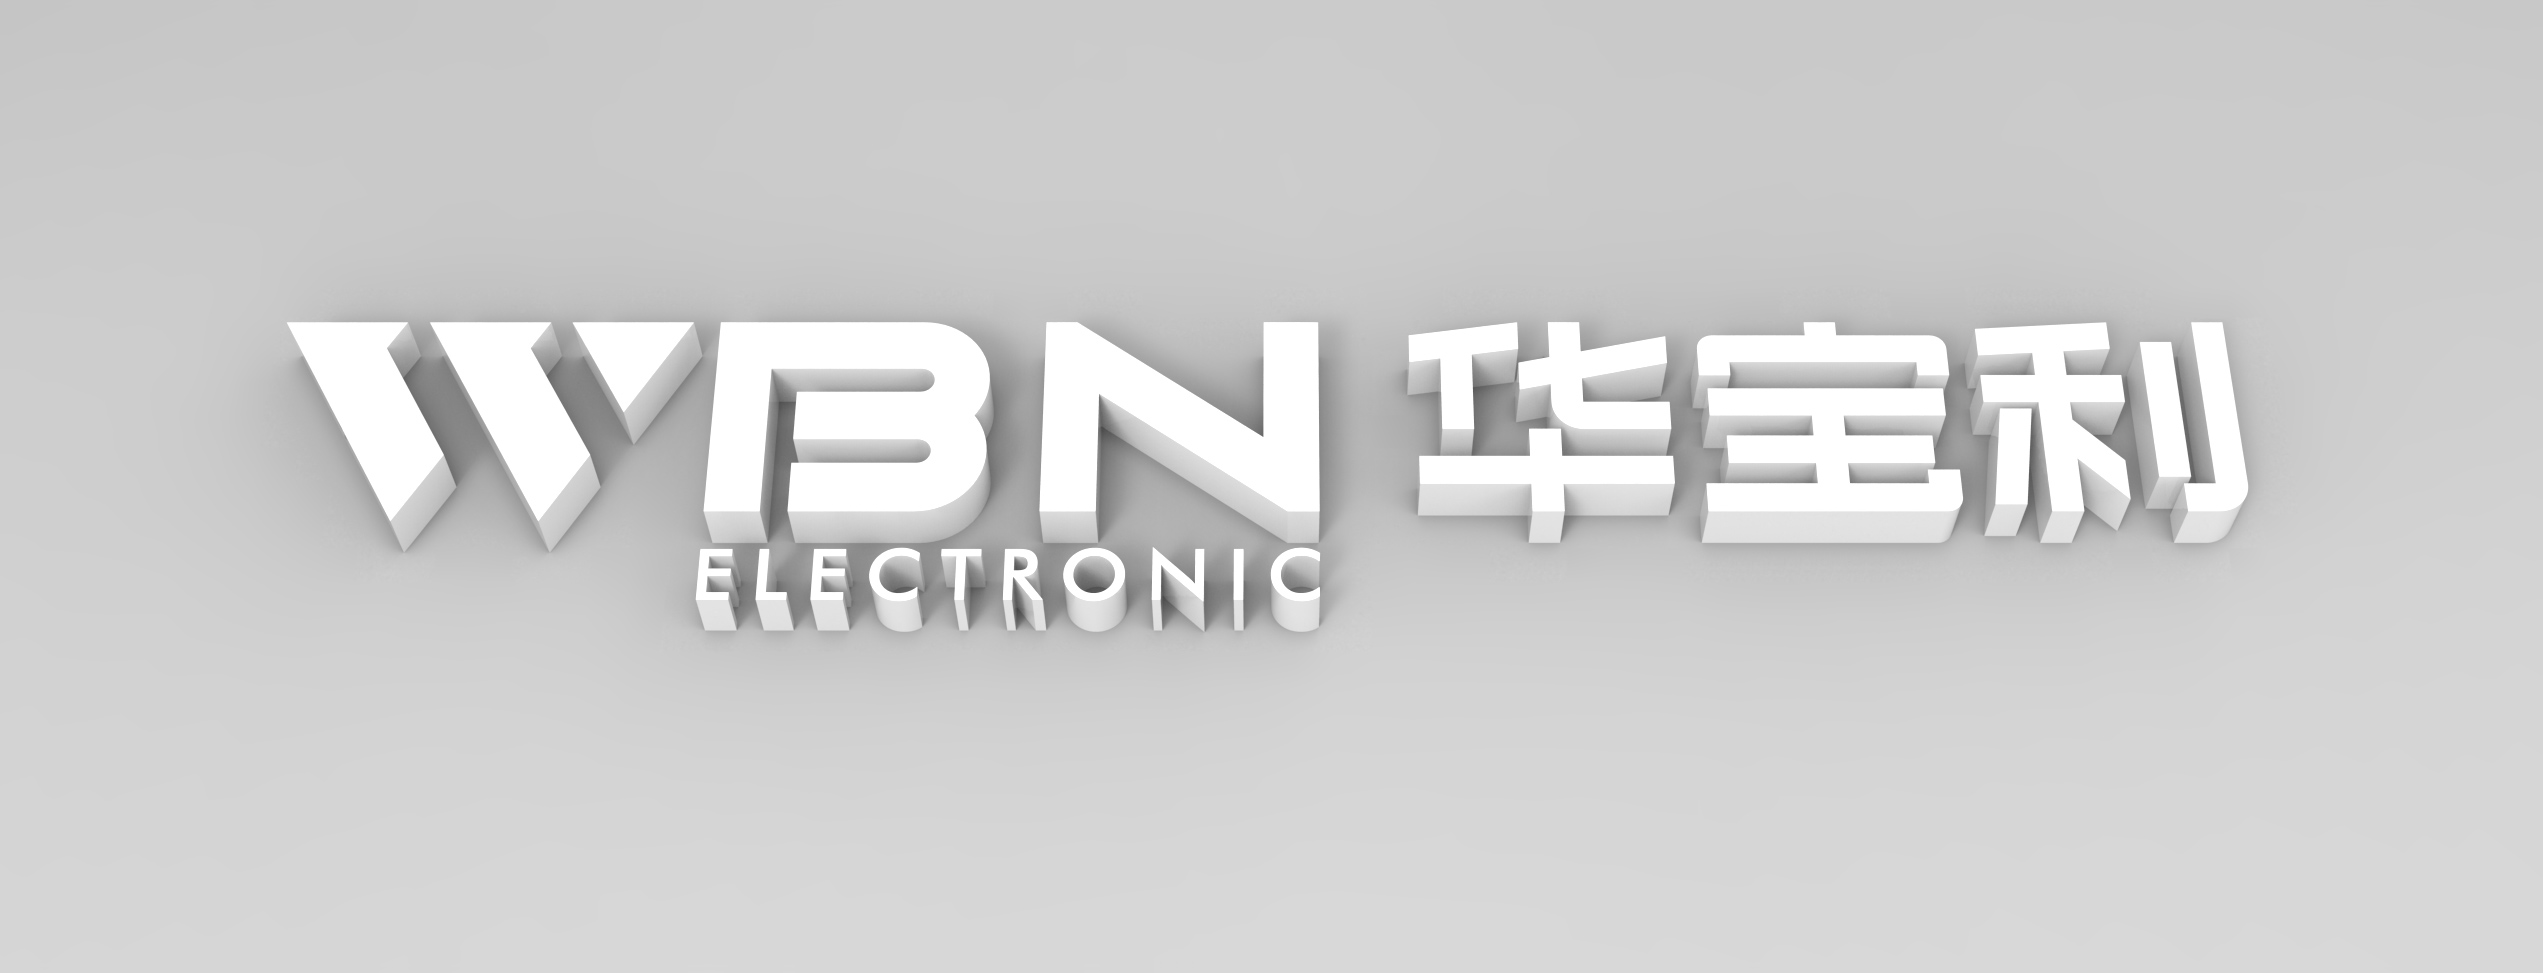 深圳科技電子制造商WBN公司標志設計